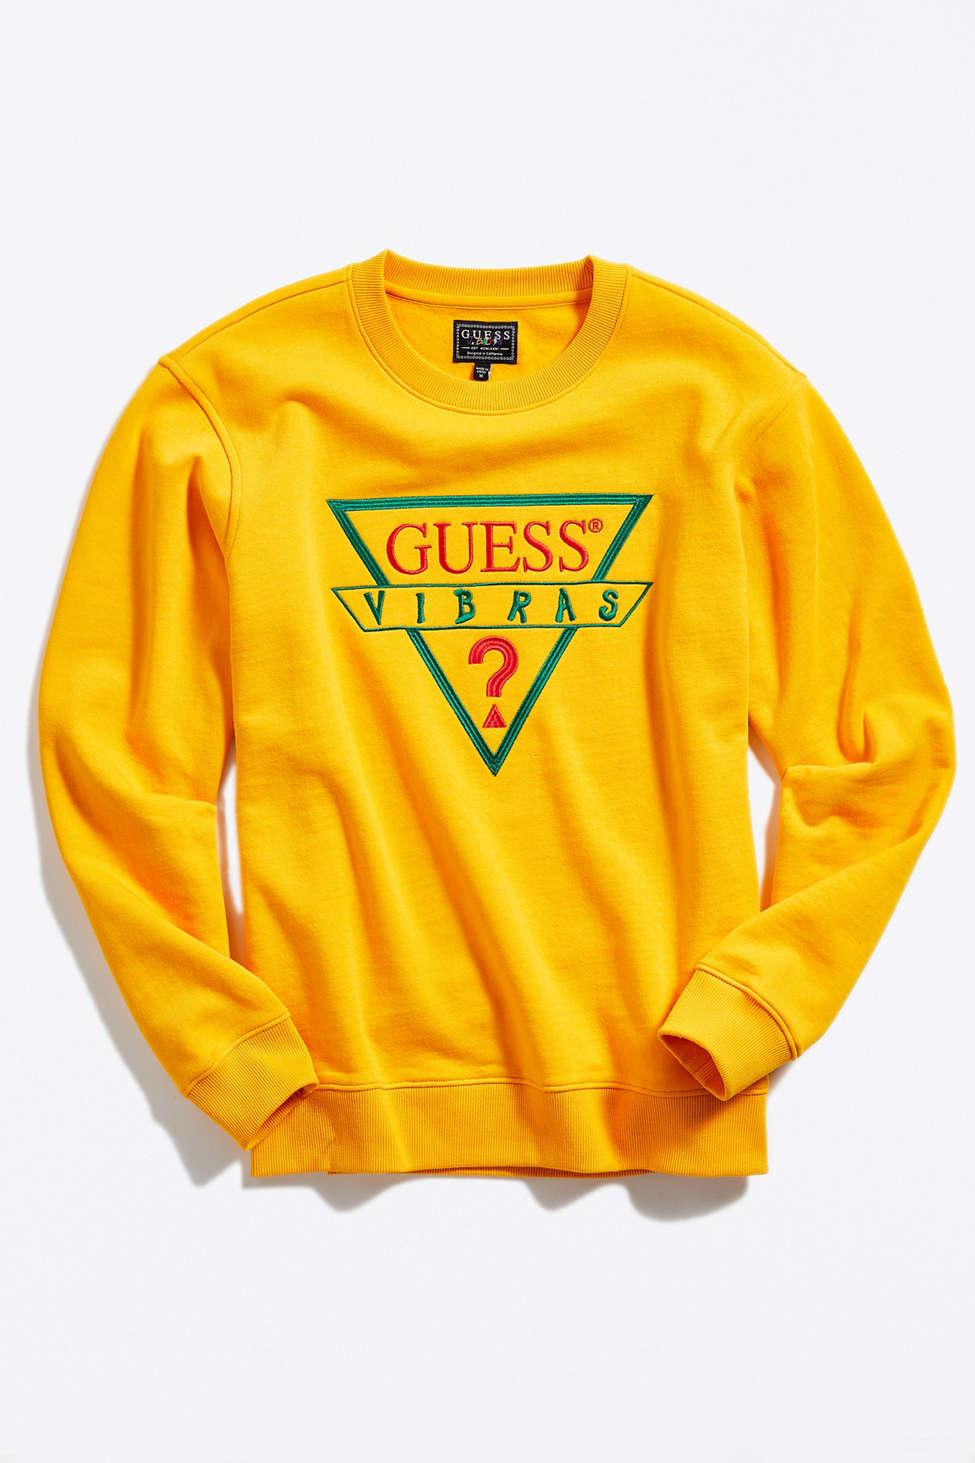 Guess X J Balvin Vibras Crew Neck Sweatshirt in Yellow Men | Lyst Canada